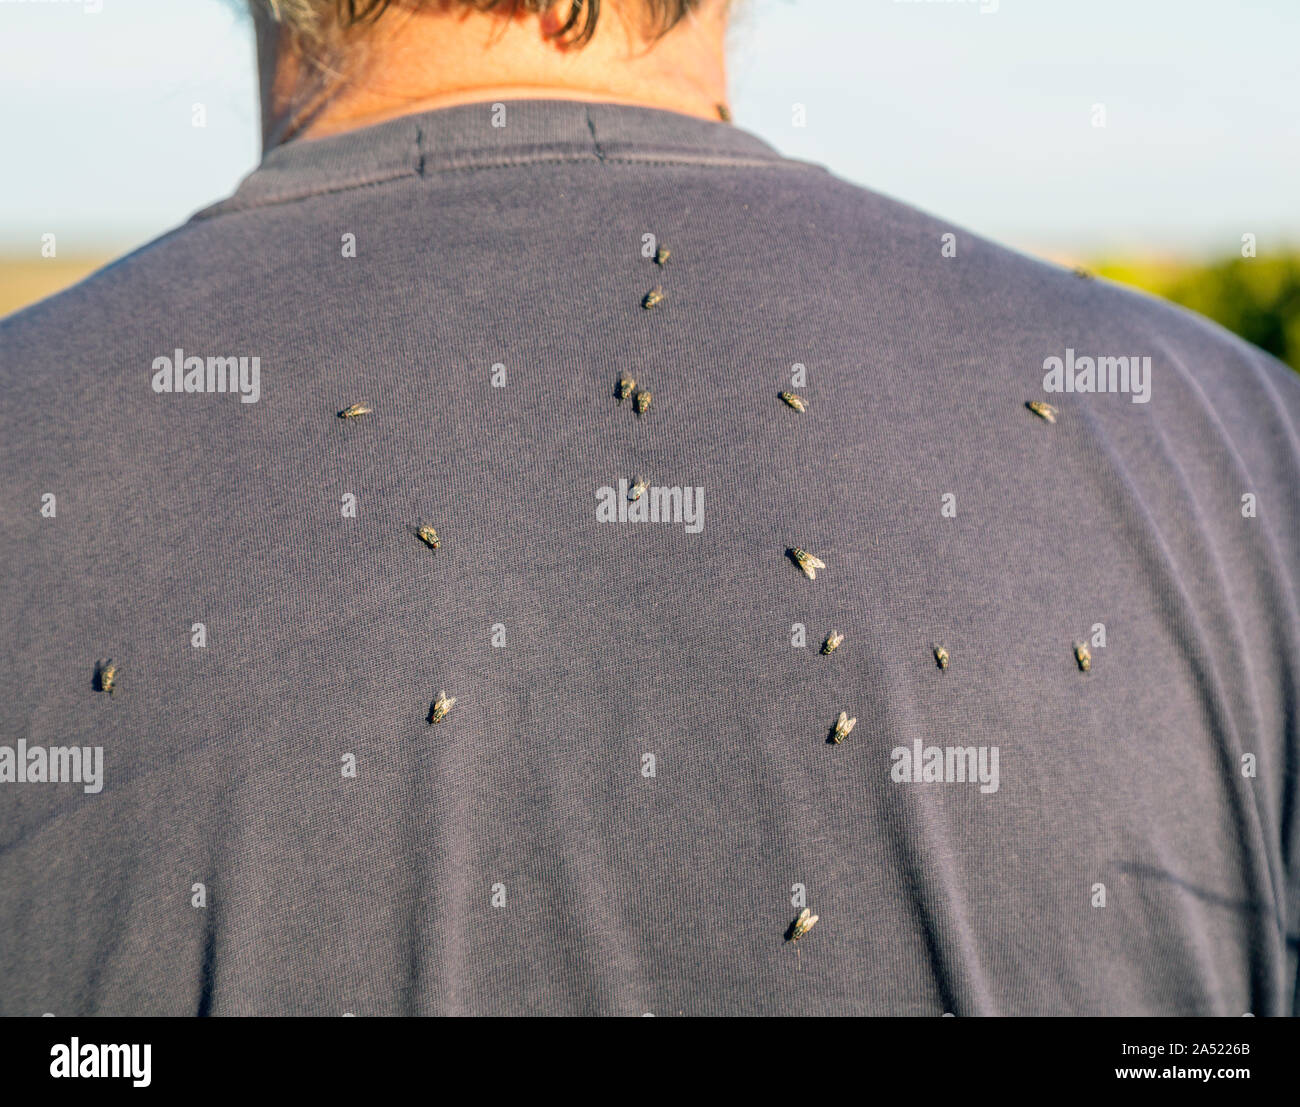 Vola sull'uomo torna, Australia. Le mosche sono una perenne fastidio nella campagna australiana. Foto Stock